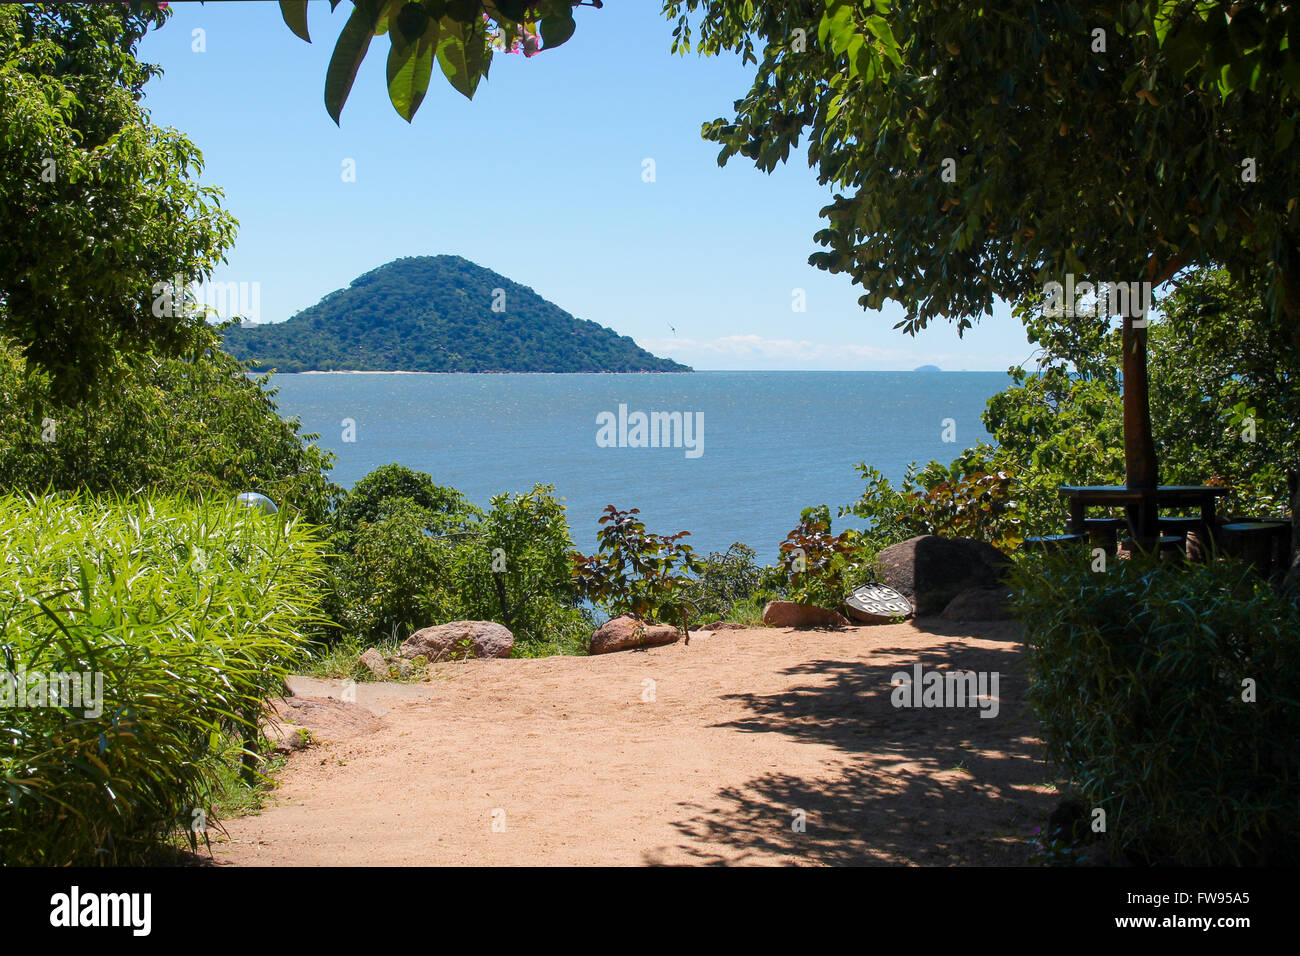 Overlooking Lake Malawi. Stock Photo